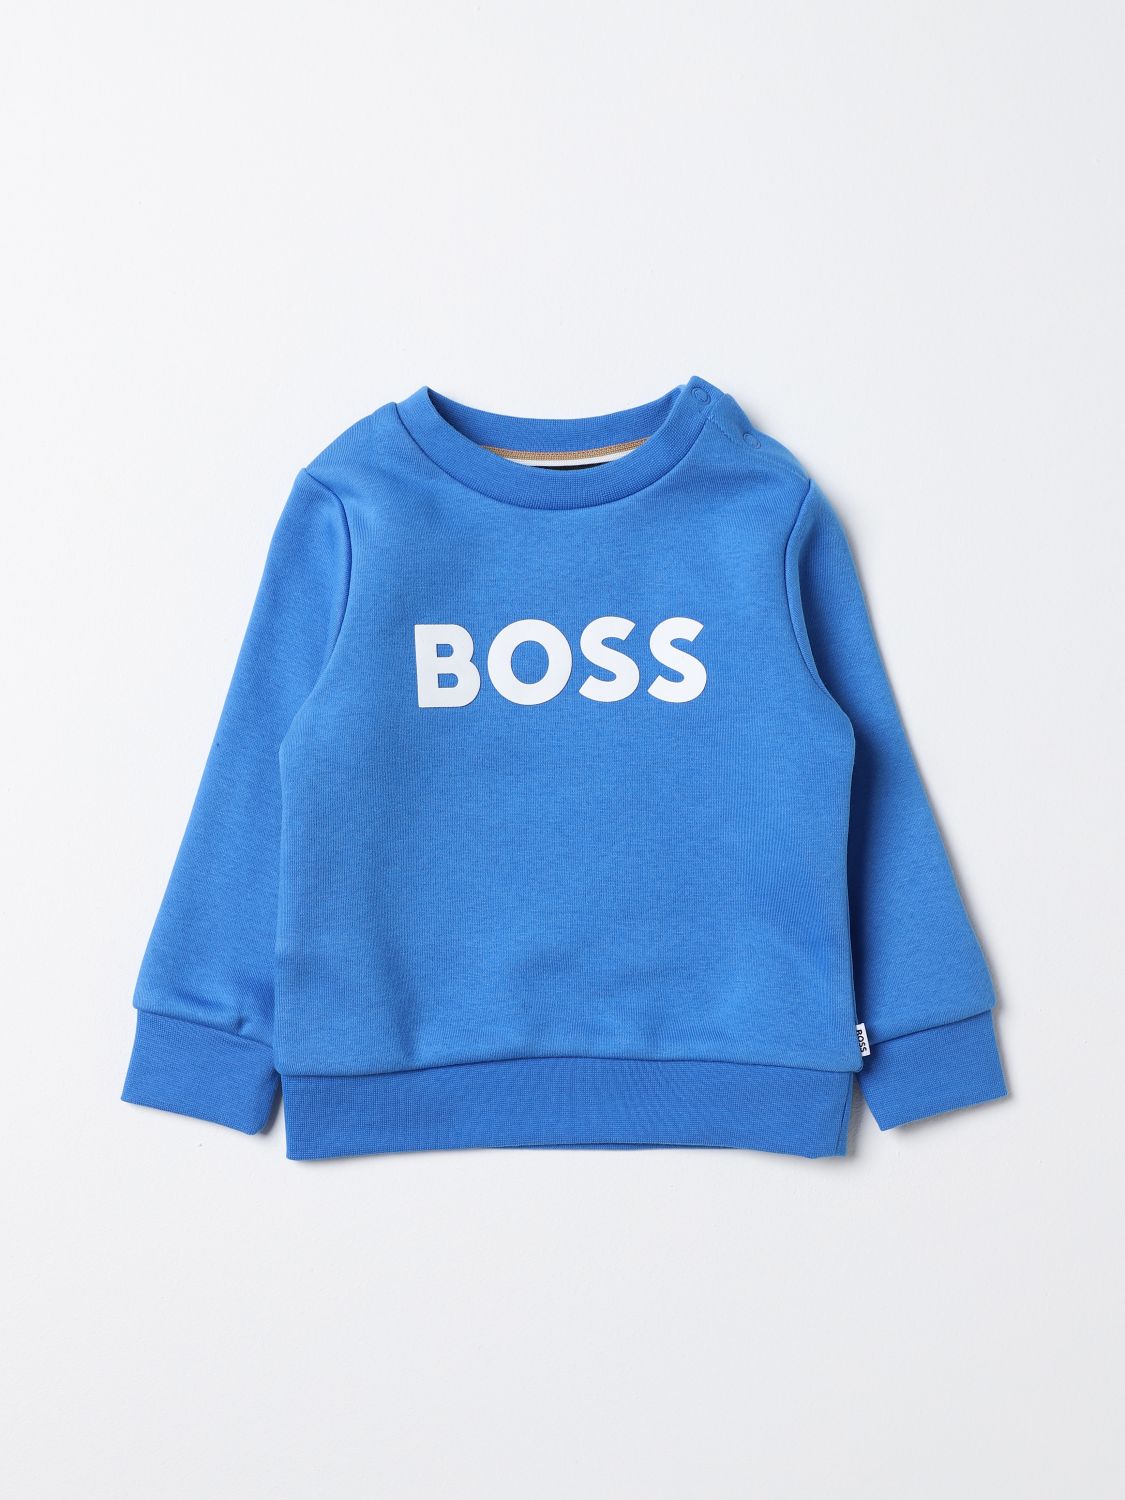 Bosswear Babies' Sweater Boss Kidswear Kids Color Blue